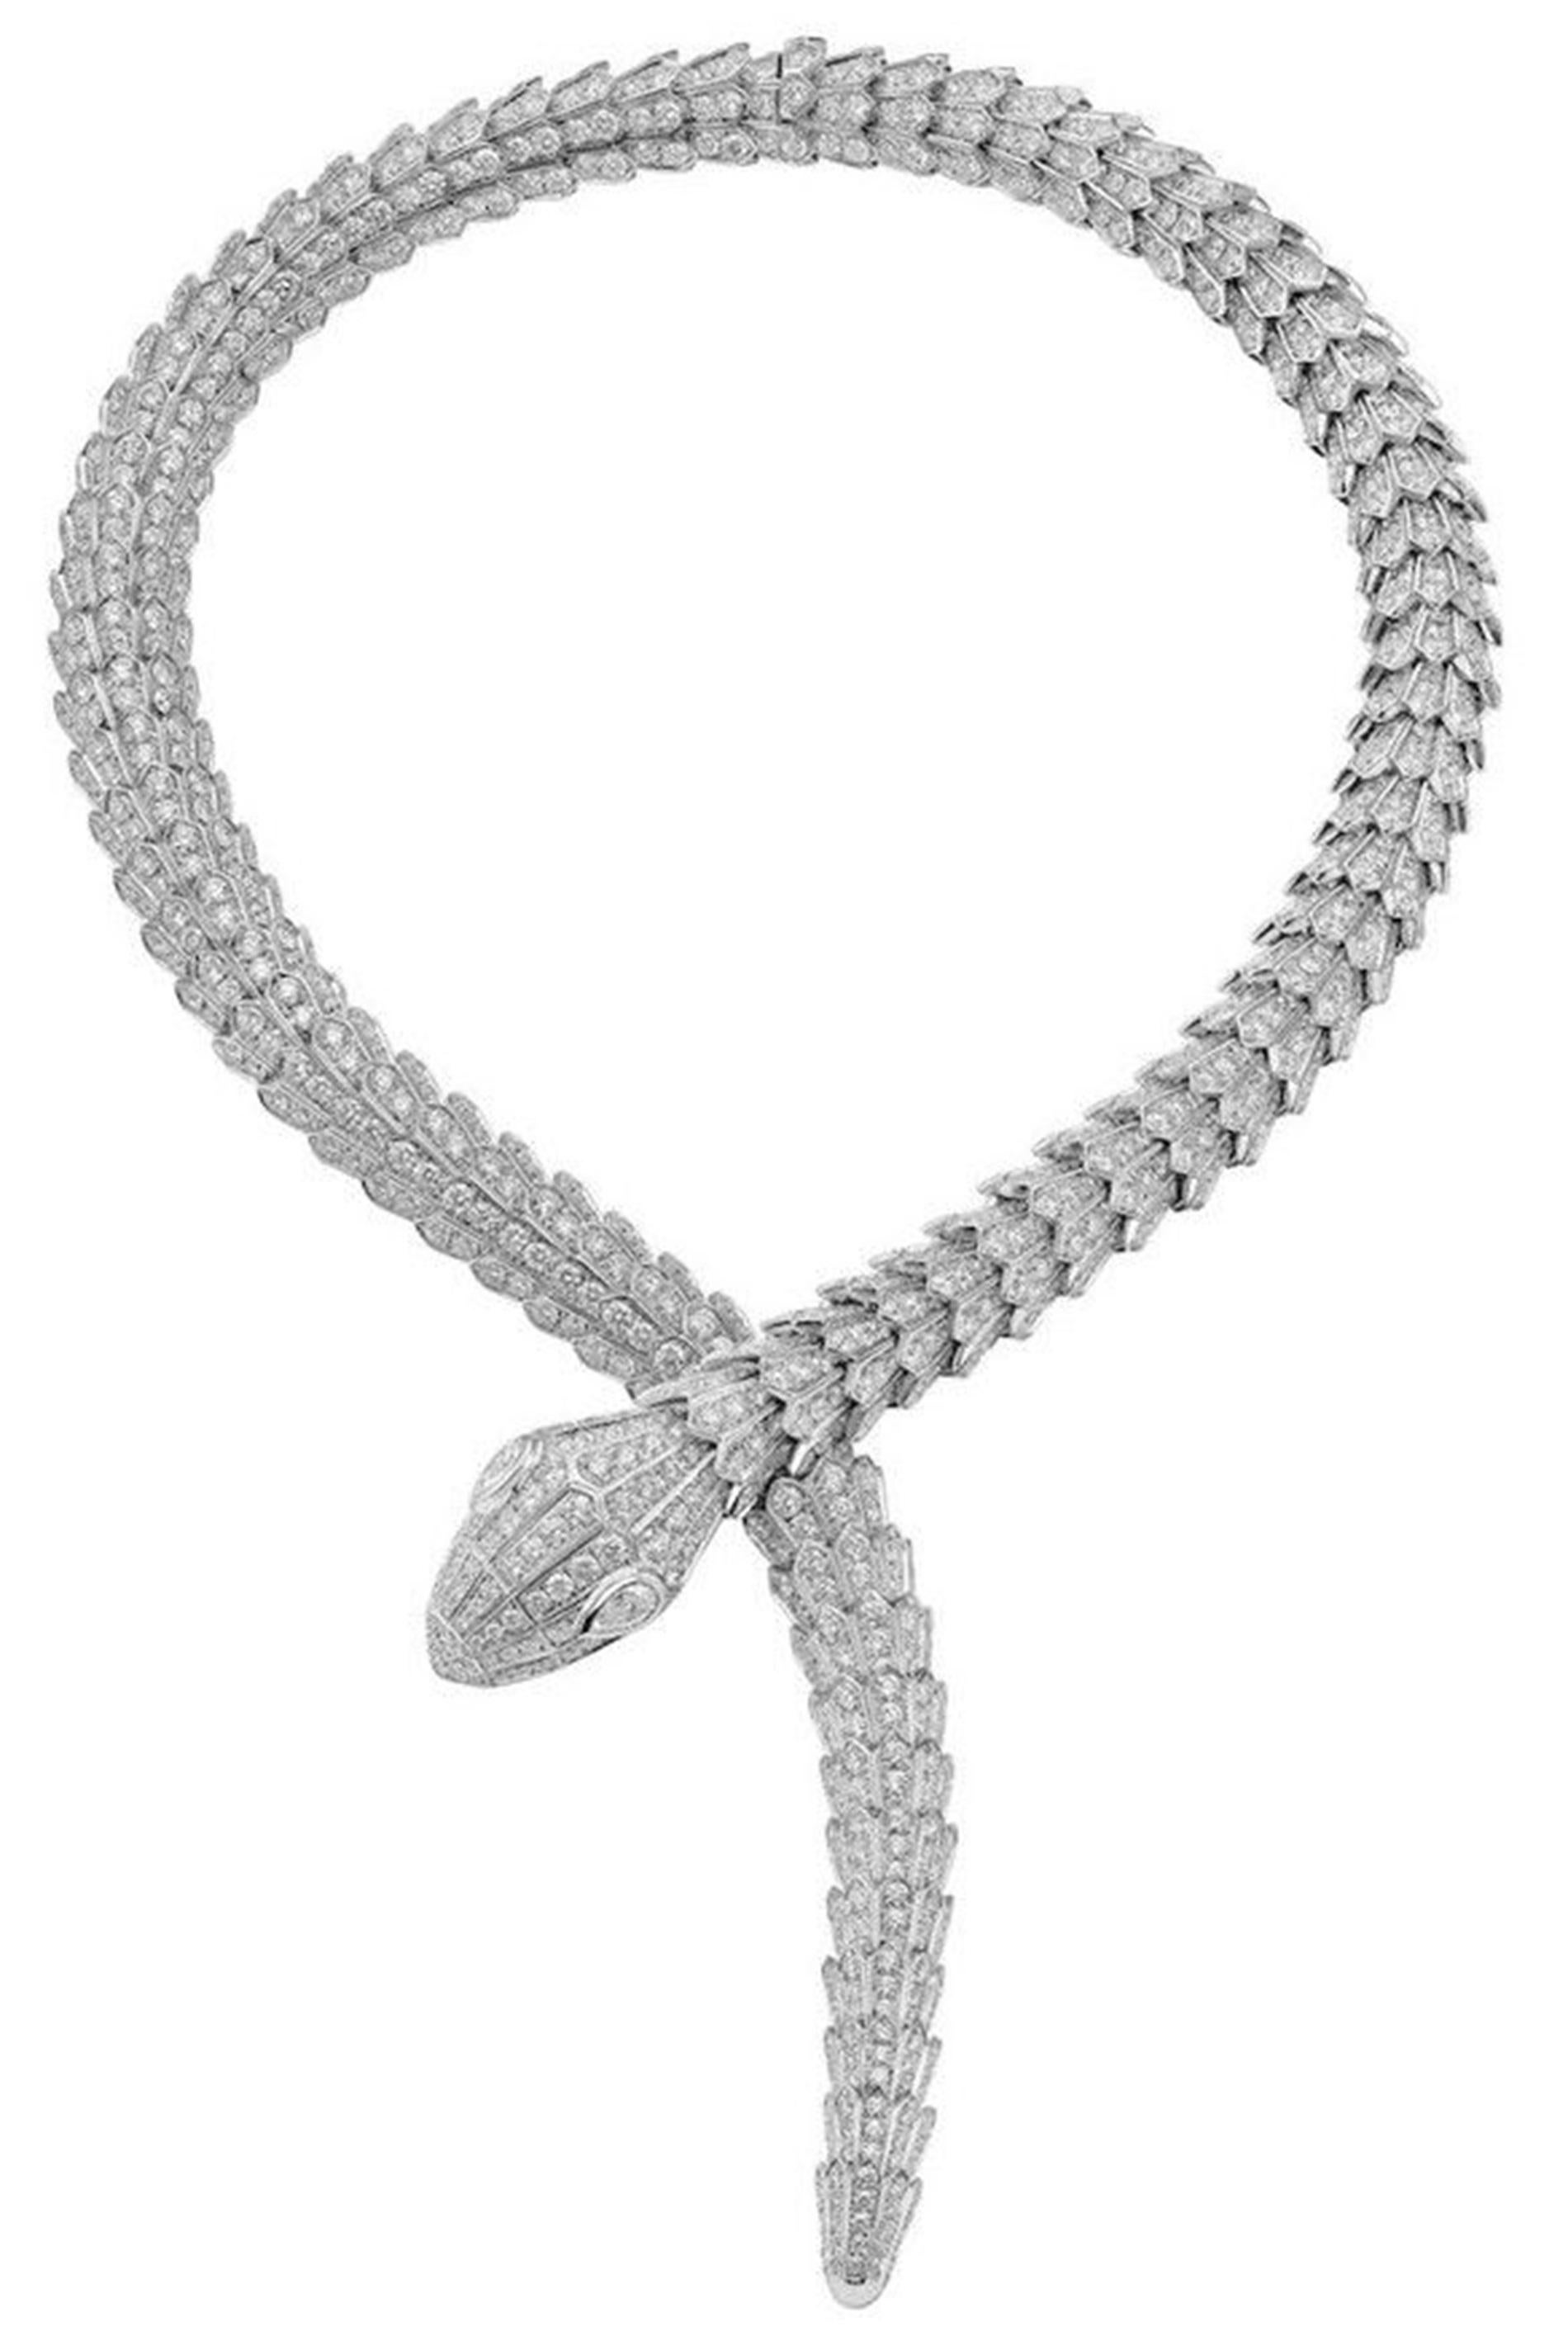 Adéntrate en un mundo de extraordinaria artesanía y opulencia con el Collar Envolvente de Diamantes Bvlgari Serpenti, una obra maestra elaborada en los renombrados talleres de Bvlgari en Italia. Cada matiz de este collar refleja un meticuloso arte,